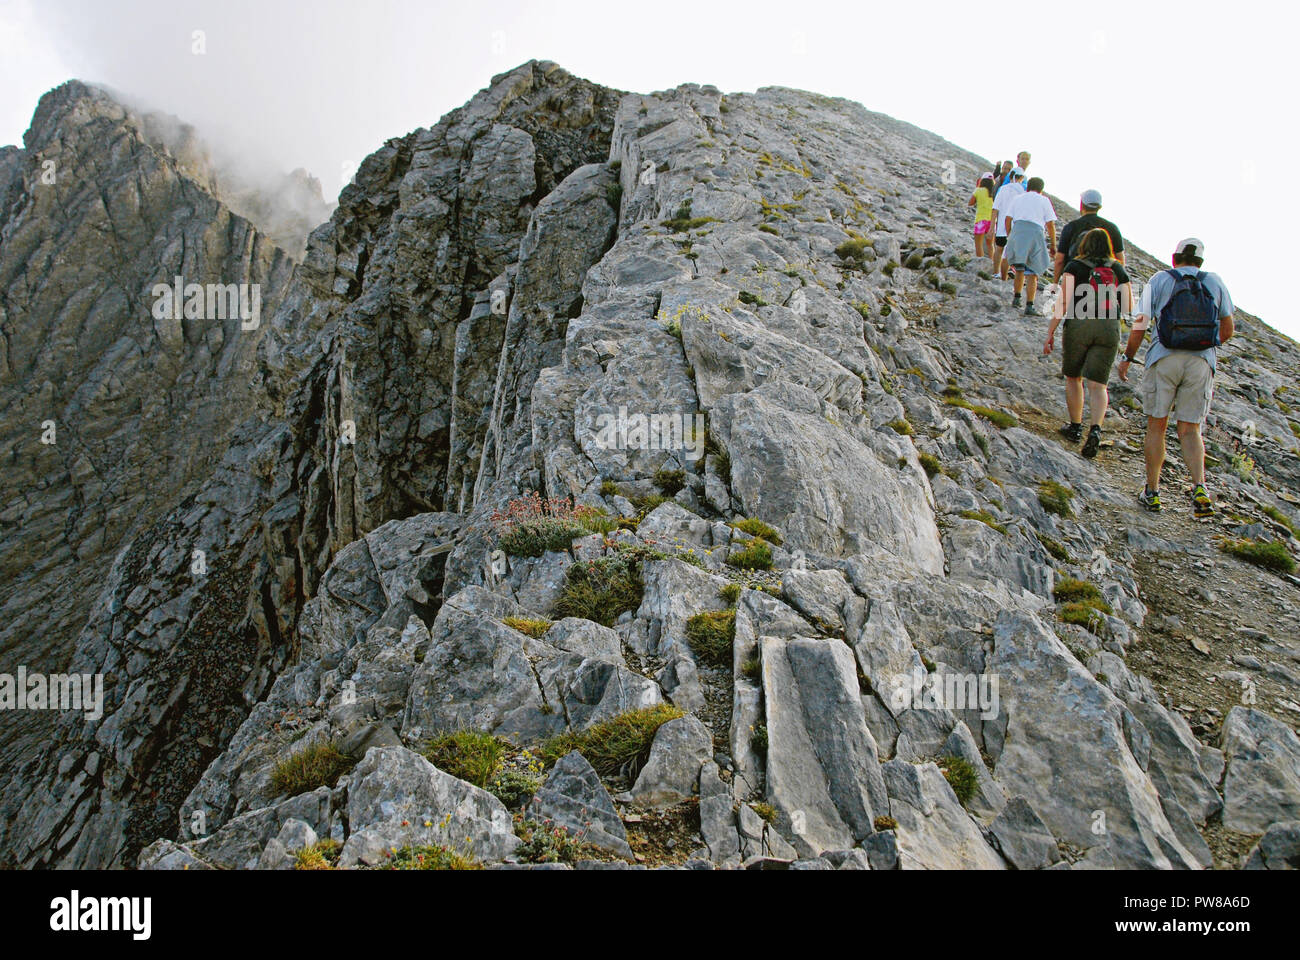 Griechenland, Berg Olymp, Kletterer auf dem Weg in der Nähe der Gipfel Mytikas (2,917 m. Höhe), auf dem Weg der E4 Europäischer Fernwanderweg. Stockfoto